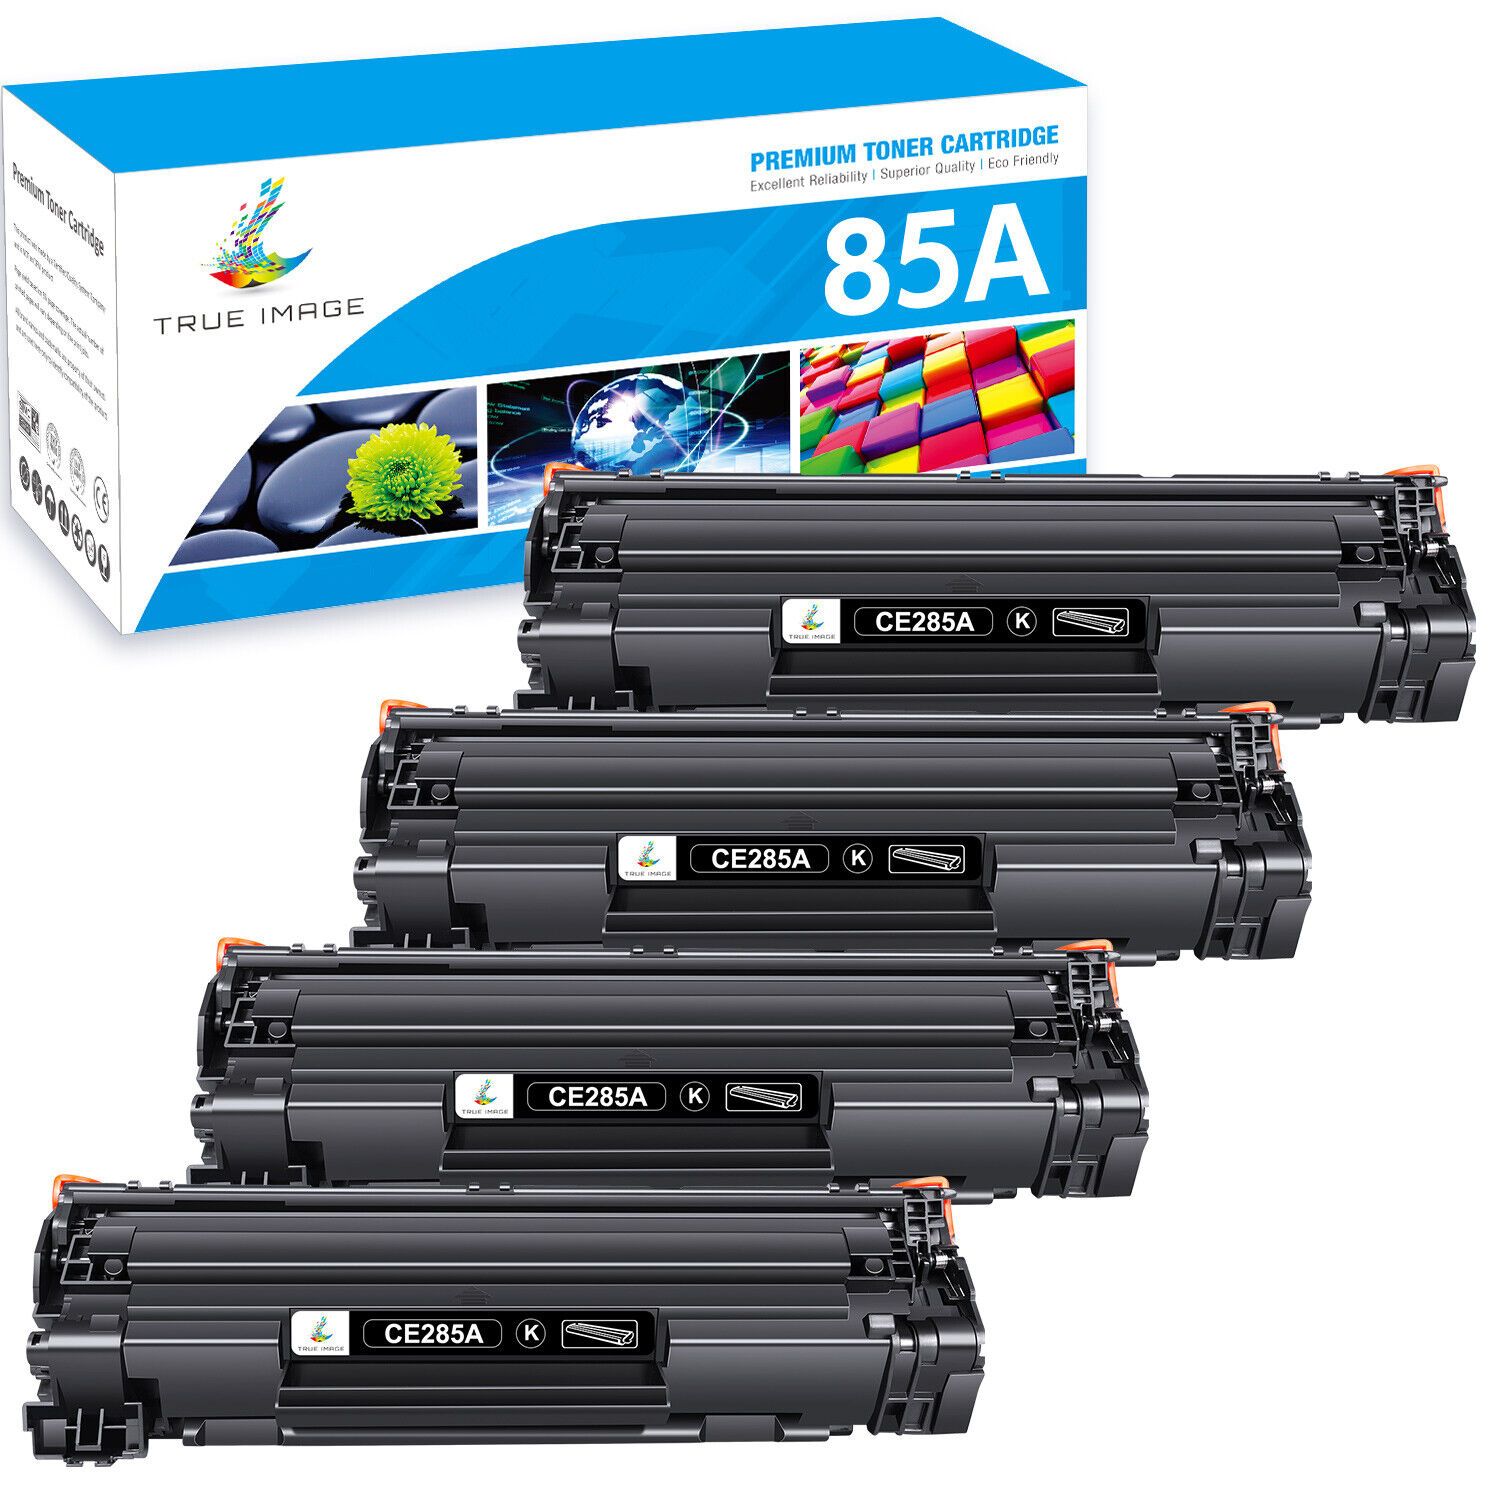 1-4x Toner Cartridge for HP CE285A 85A LaserJet ProP11505 P1006 P1102 P1109w